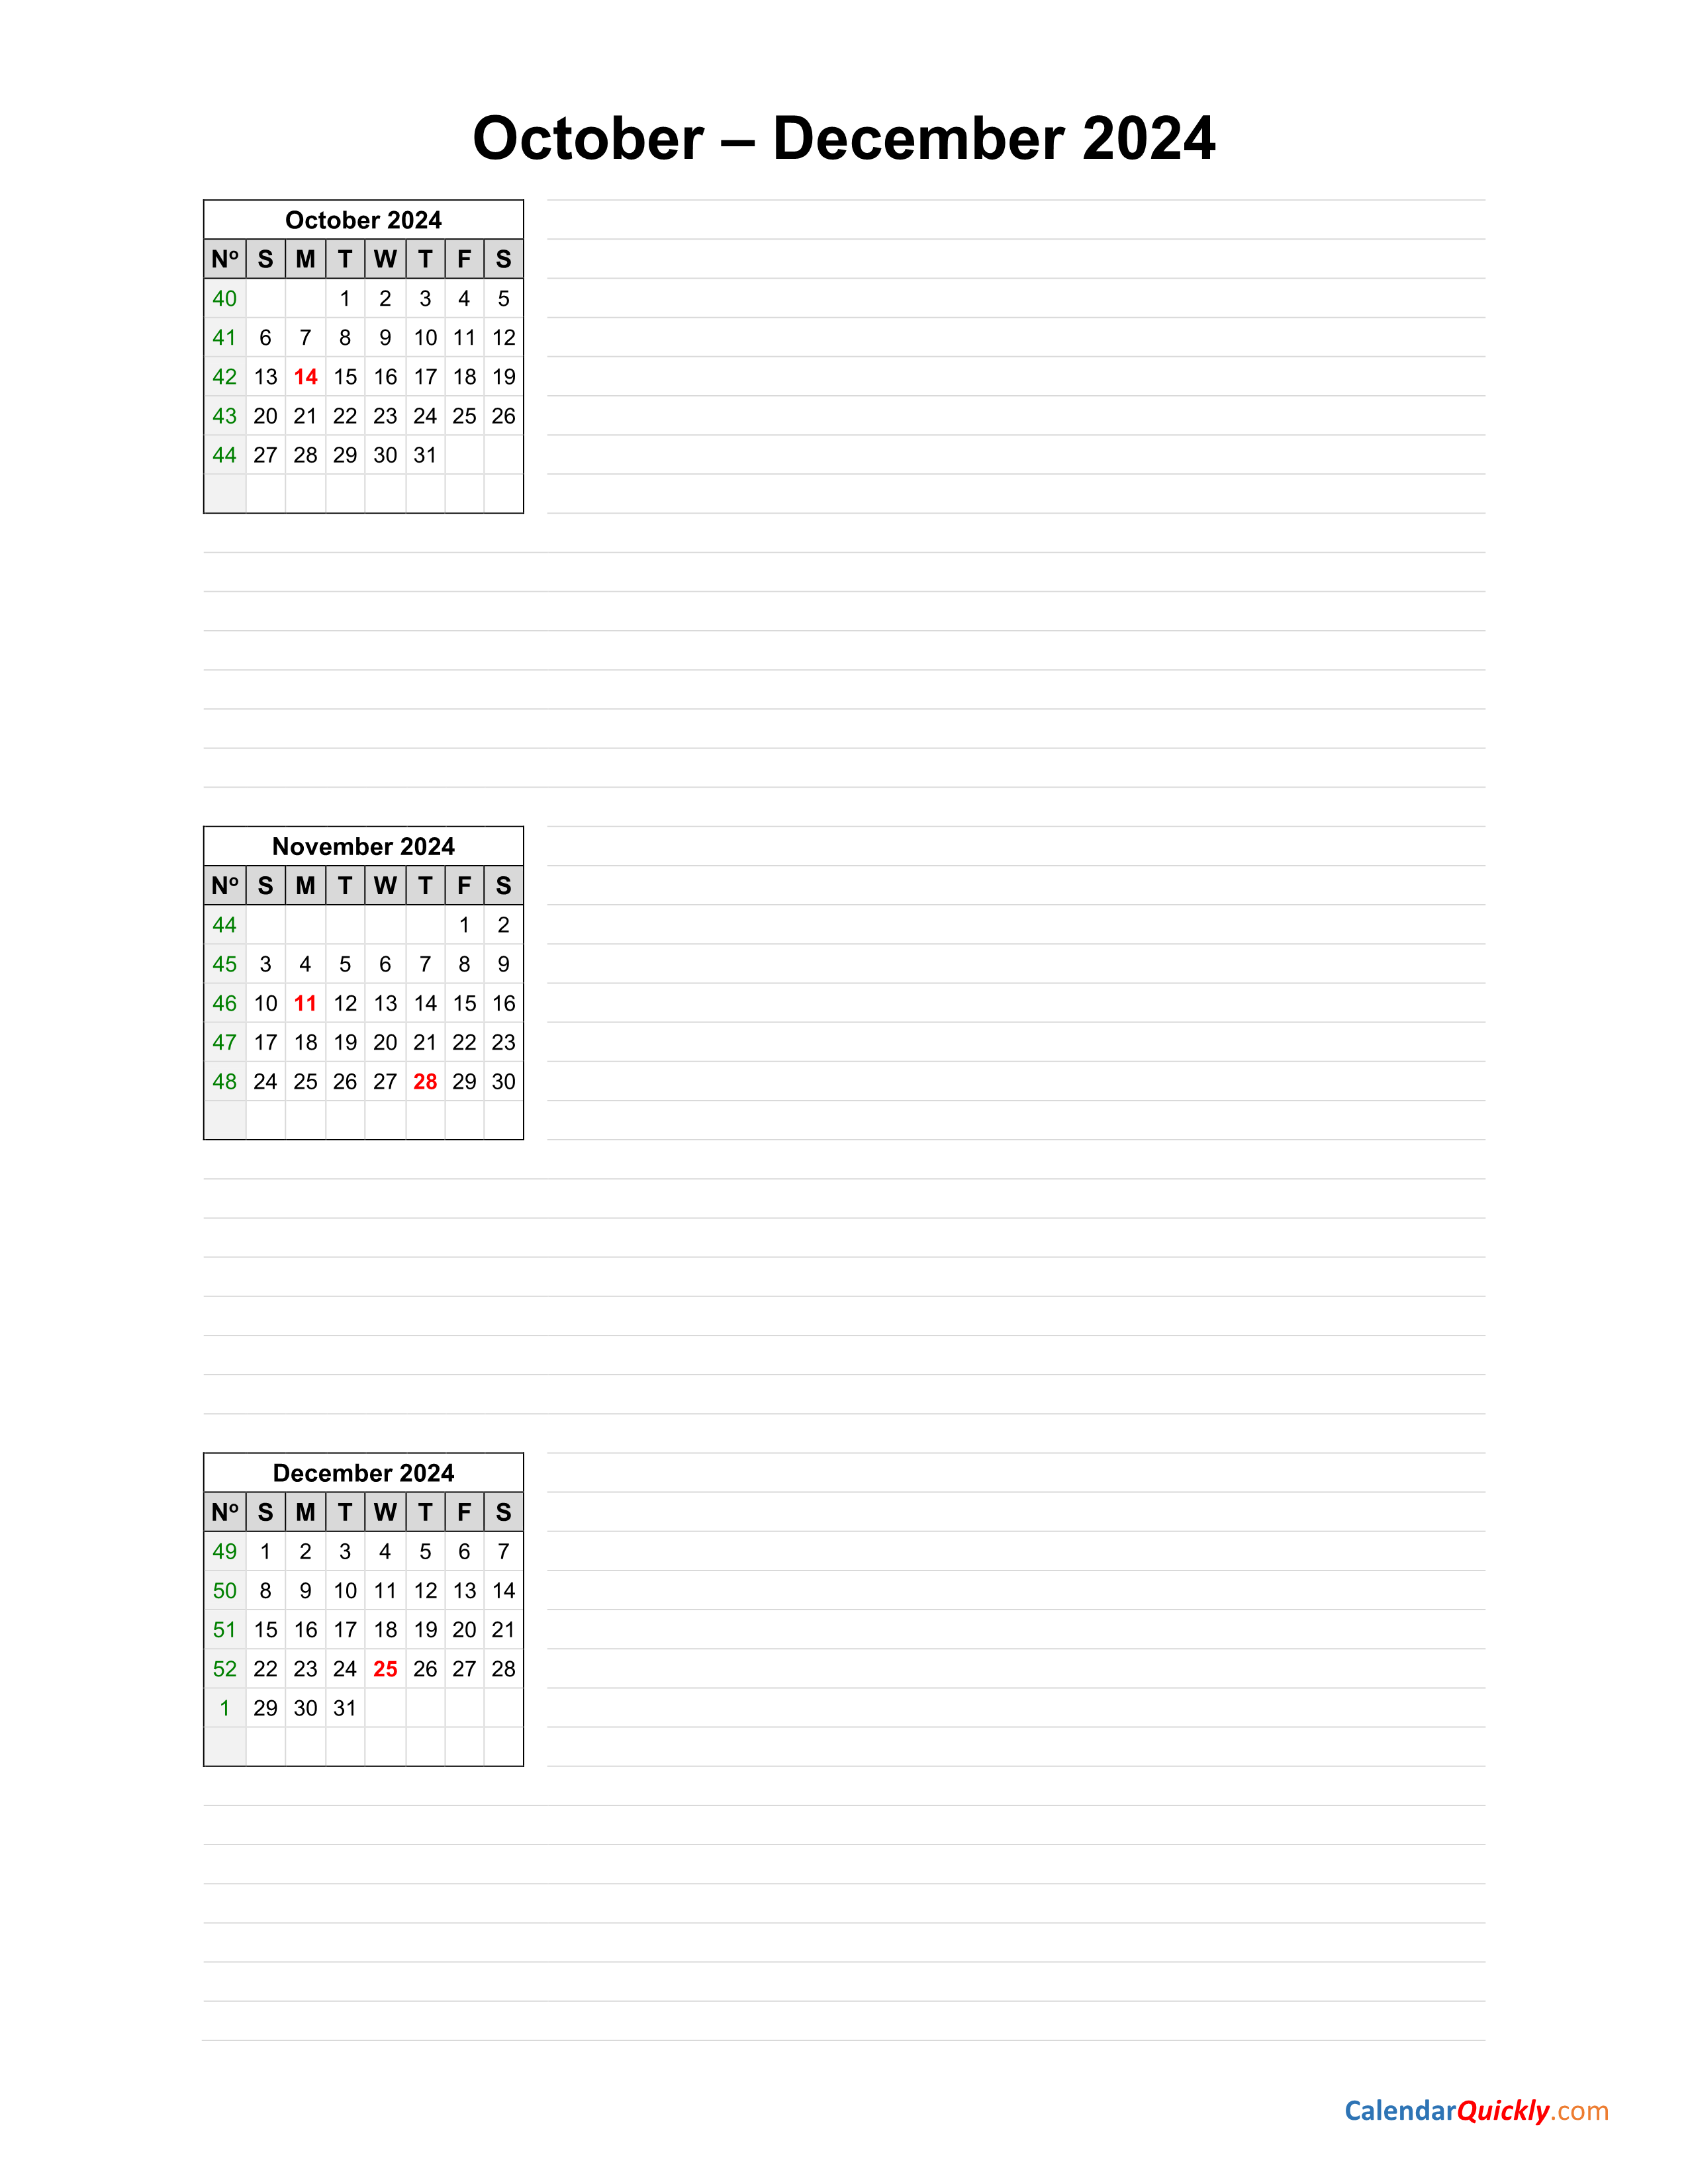 october-to-december-2024-calendar-calendar-quickly